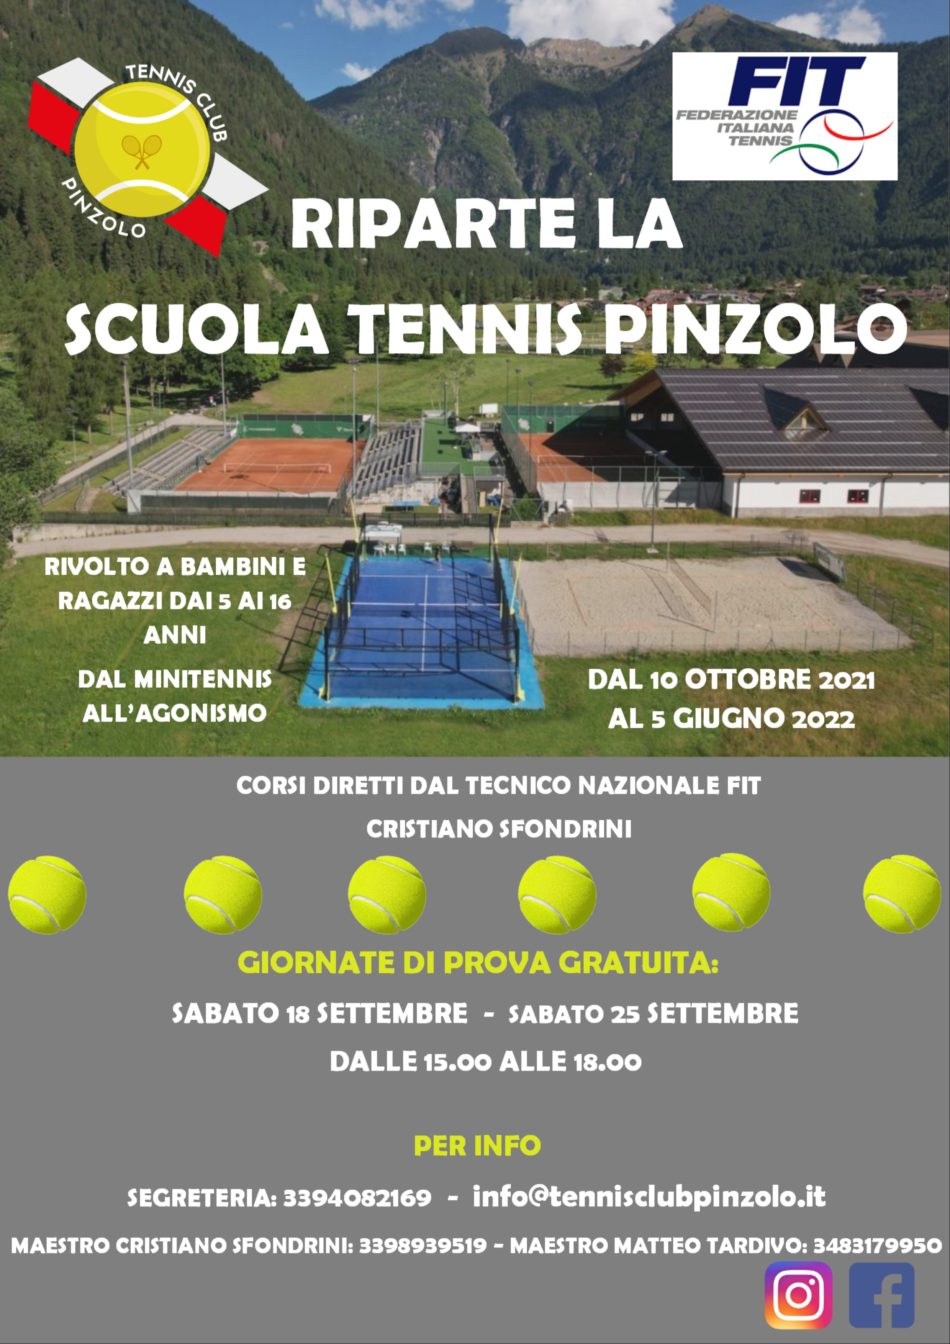 Riparte la Scuola Tennis Pinzolo